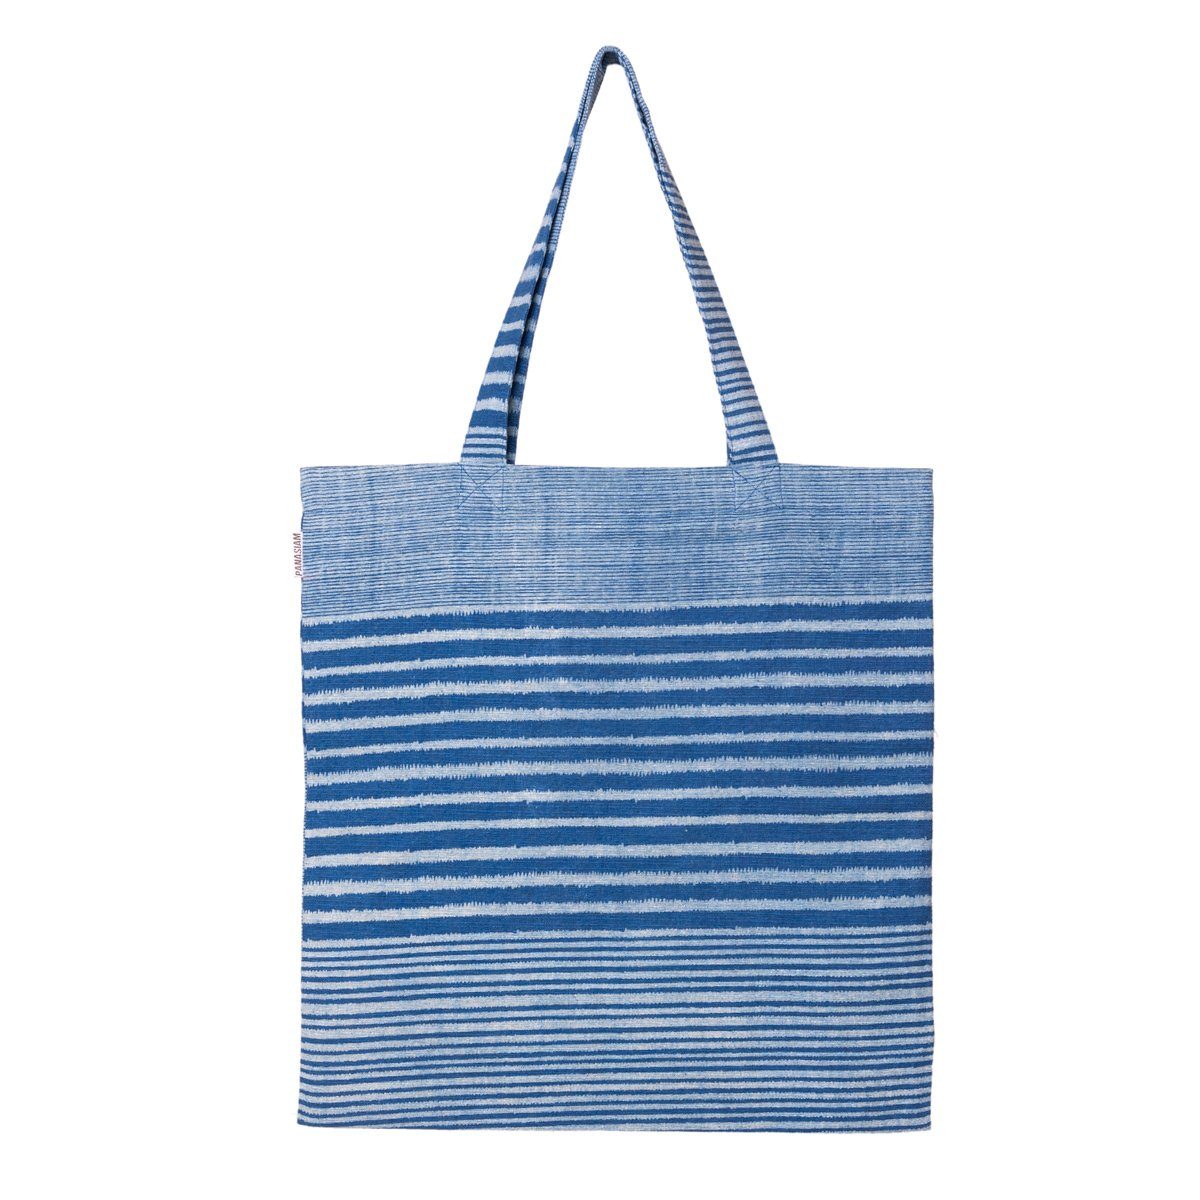 PANASIAM Beuteltasche Geometrix Baumwollbeutel auch als Einkaufstasche oder Schuhbeutel, aus 100% Baumwolle Jutebeutel mit traditionellen japanischen Mustern Stripe